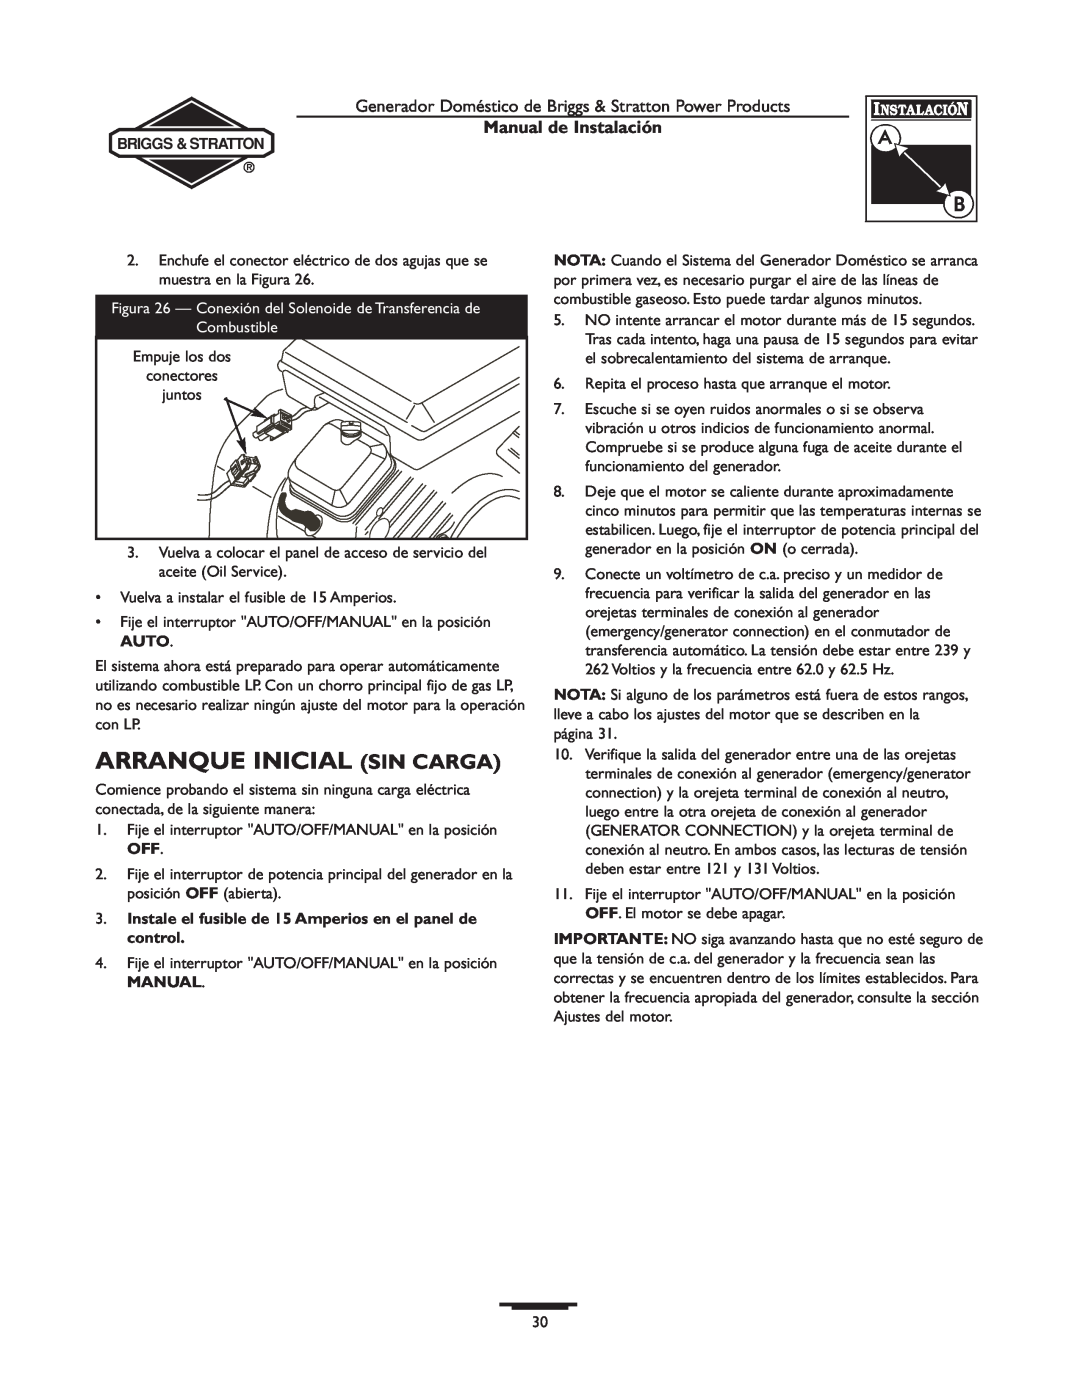 Briggs & Stratton 01938-0, 01815-0 manual Arranque Inicial Sin Carga, Manual de Instalación 